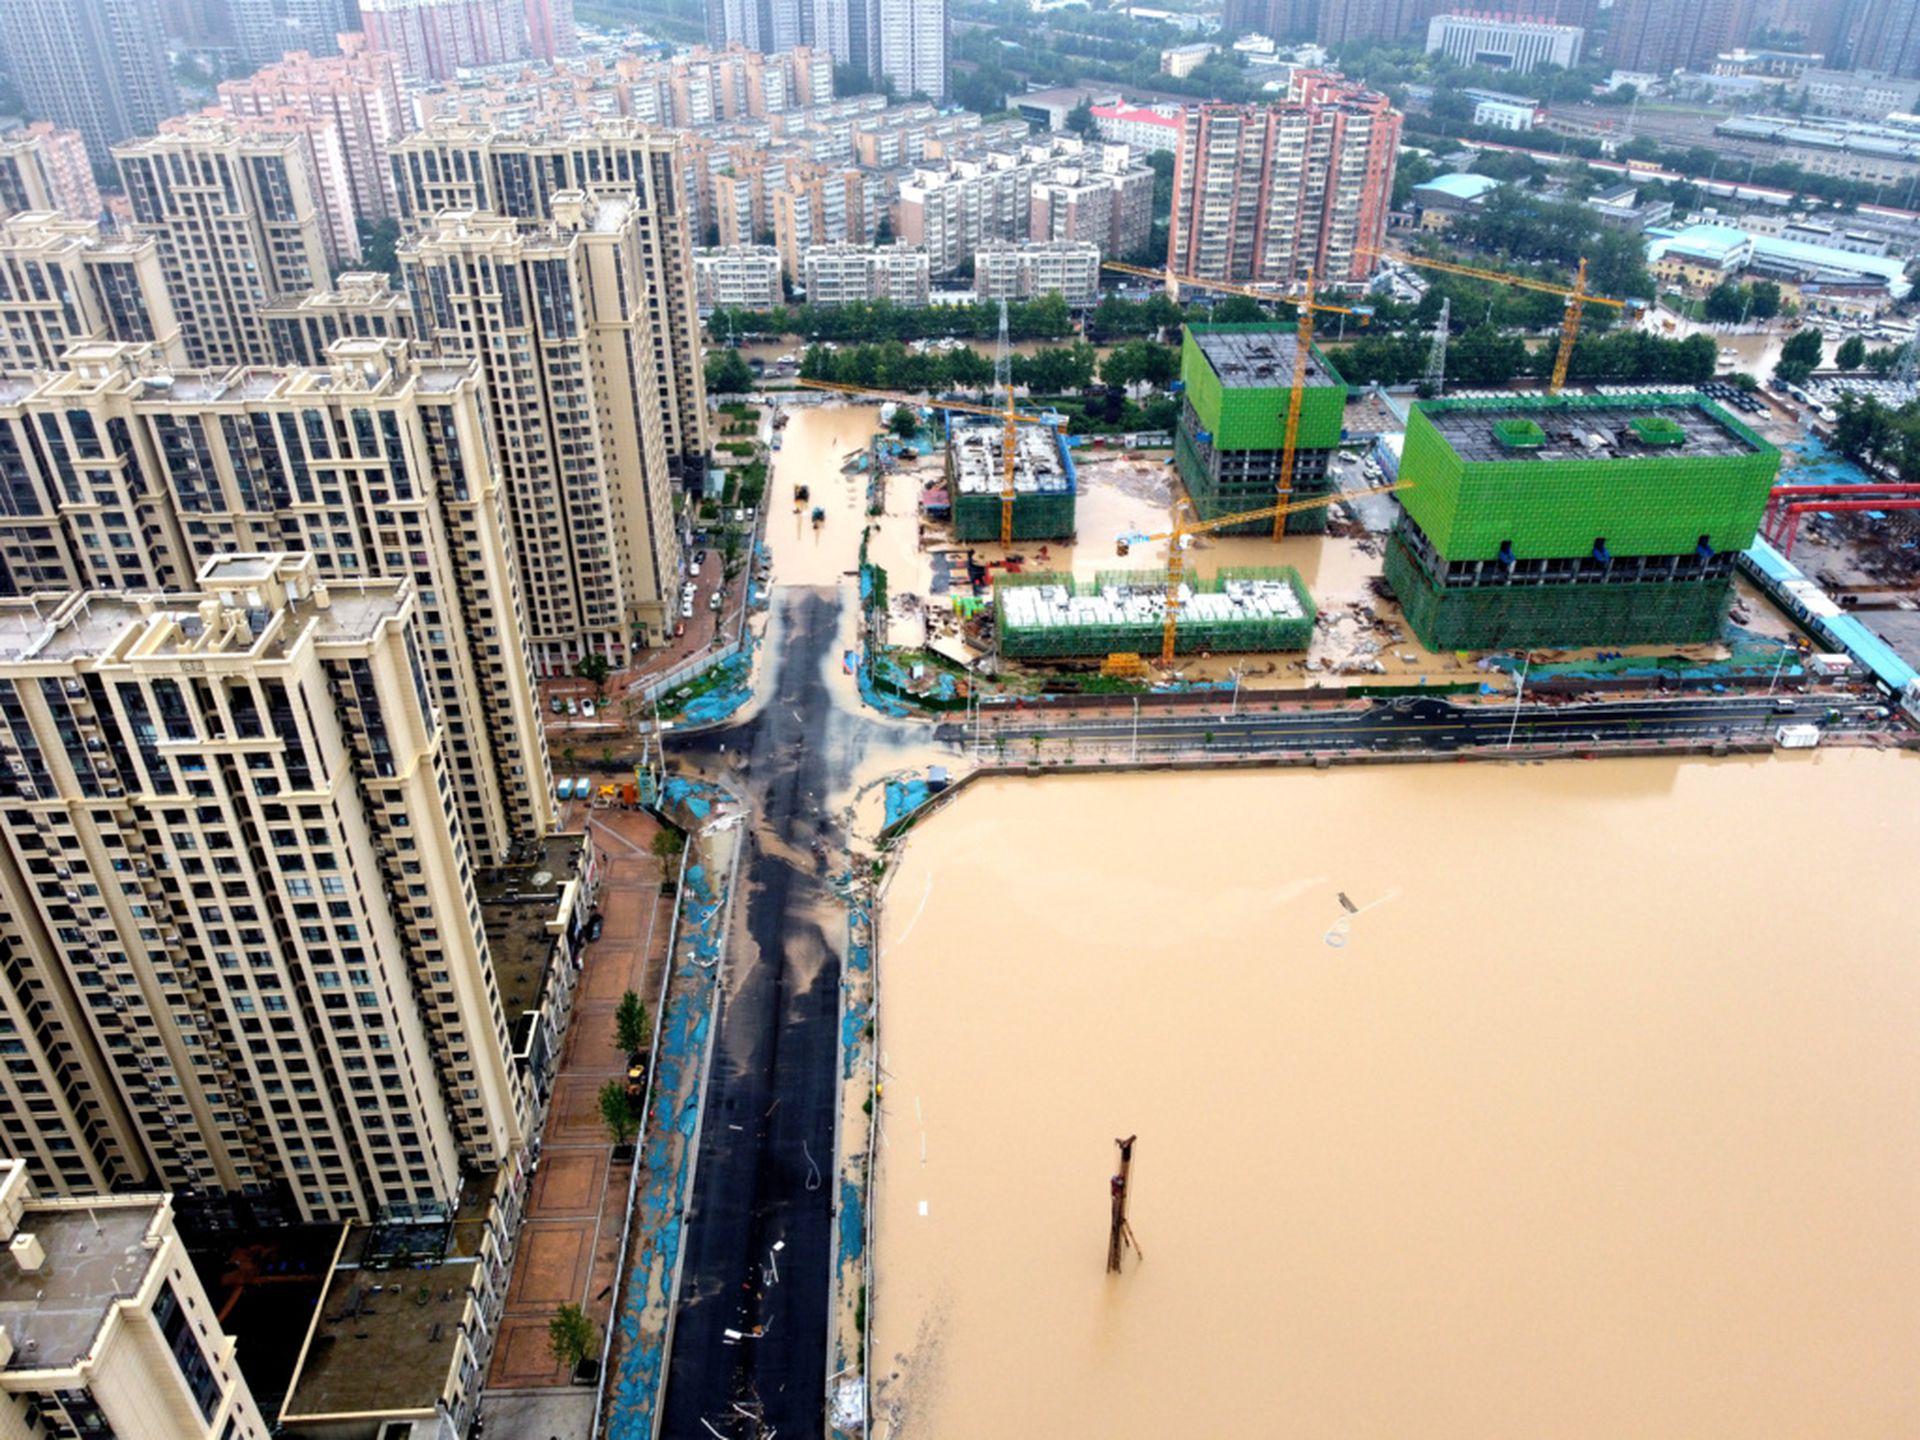 郑州遭遇的特大暴雨和洪水显然超过了一般城市市政建设的排水承载能力。 （路透社）